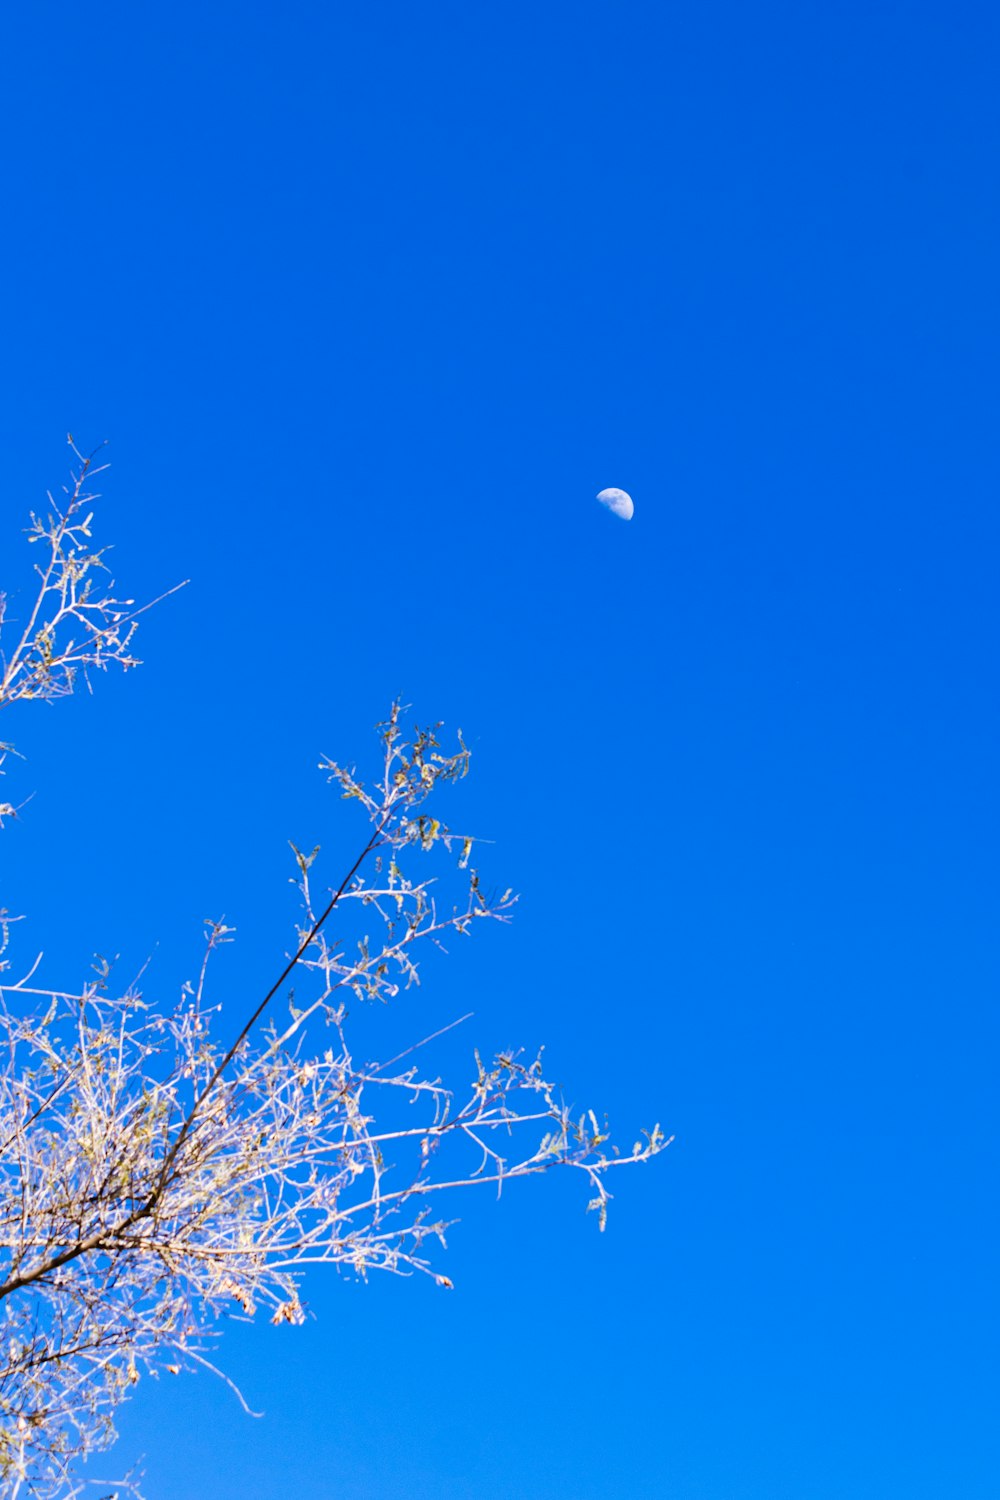 遠くに半月が見える澄んだ青空